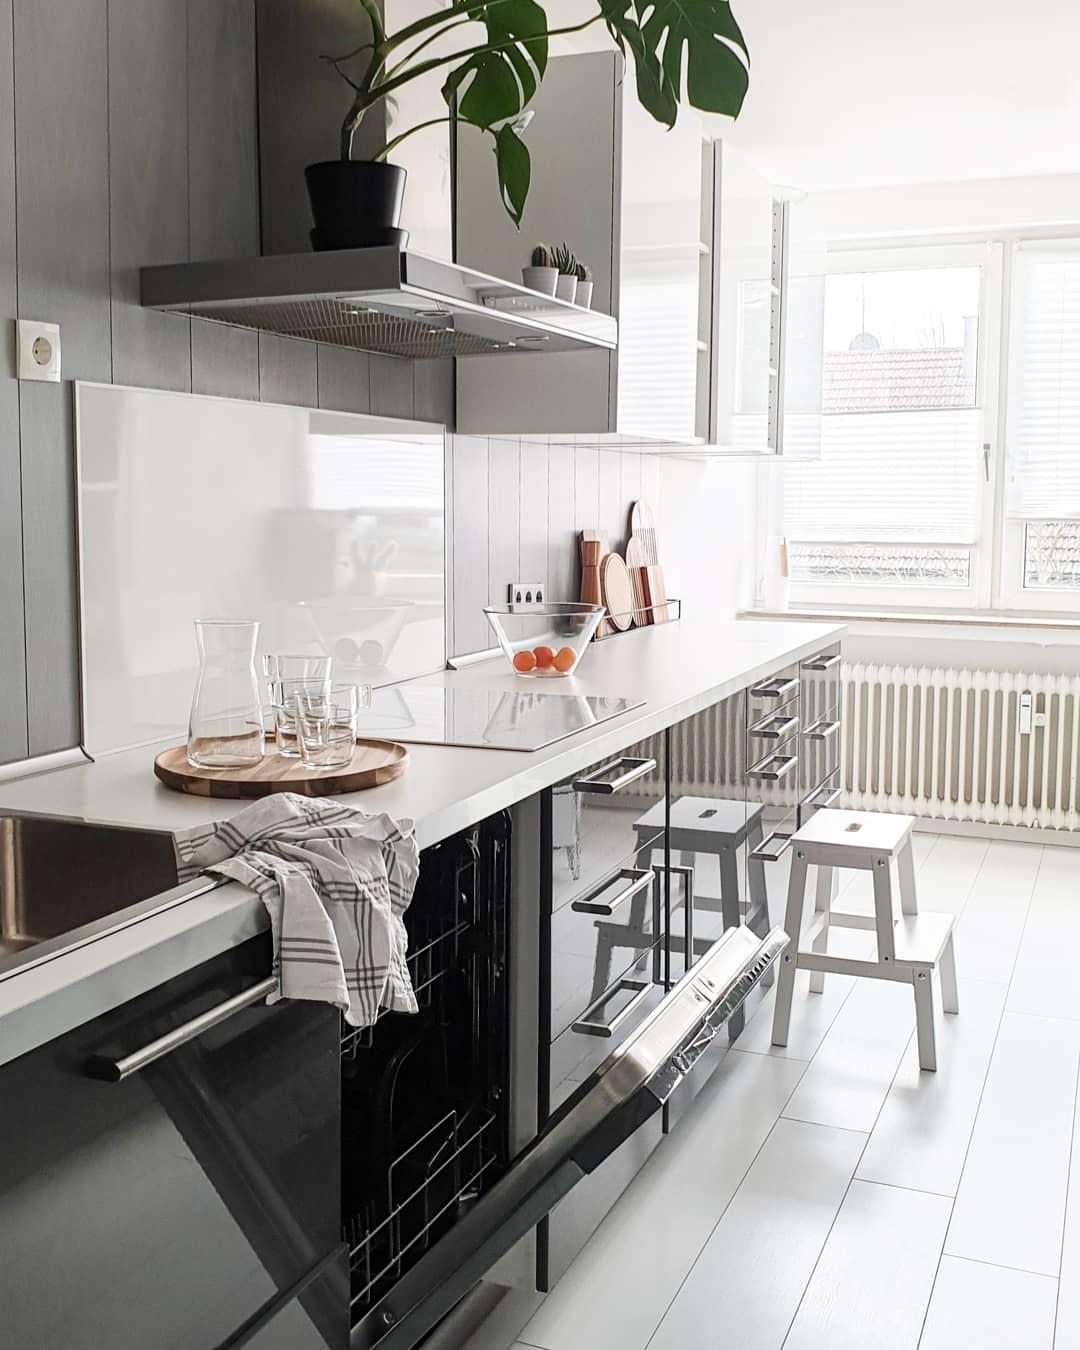 #kitchenview #minimalism #nordicminimalism #küchenzeile #küchenliebe #kitchen #interior #monochromehome